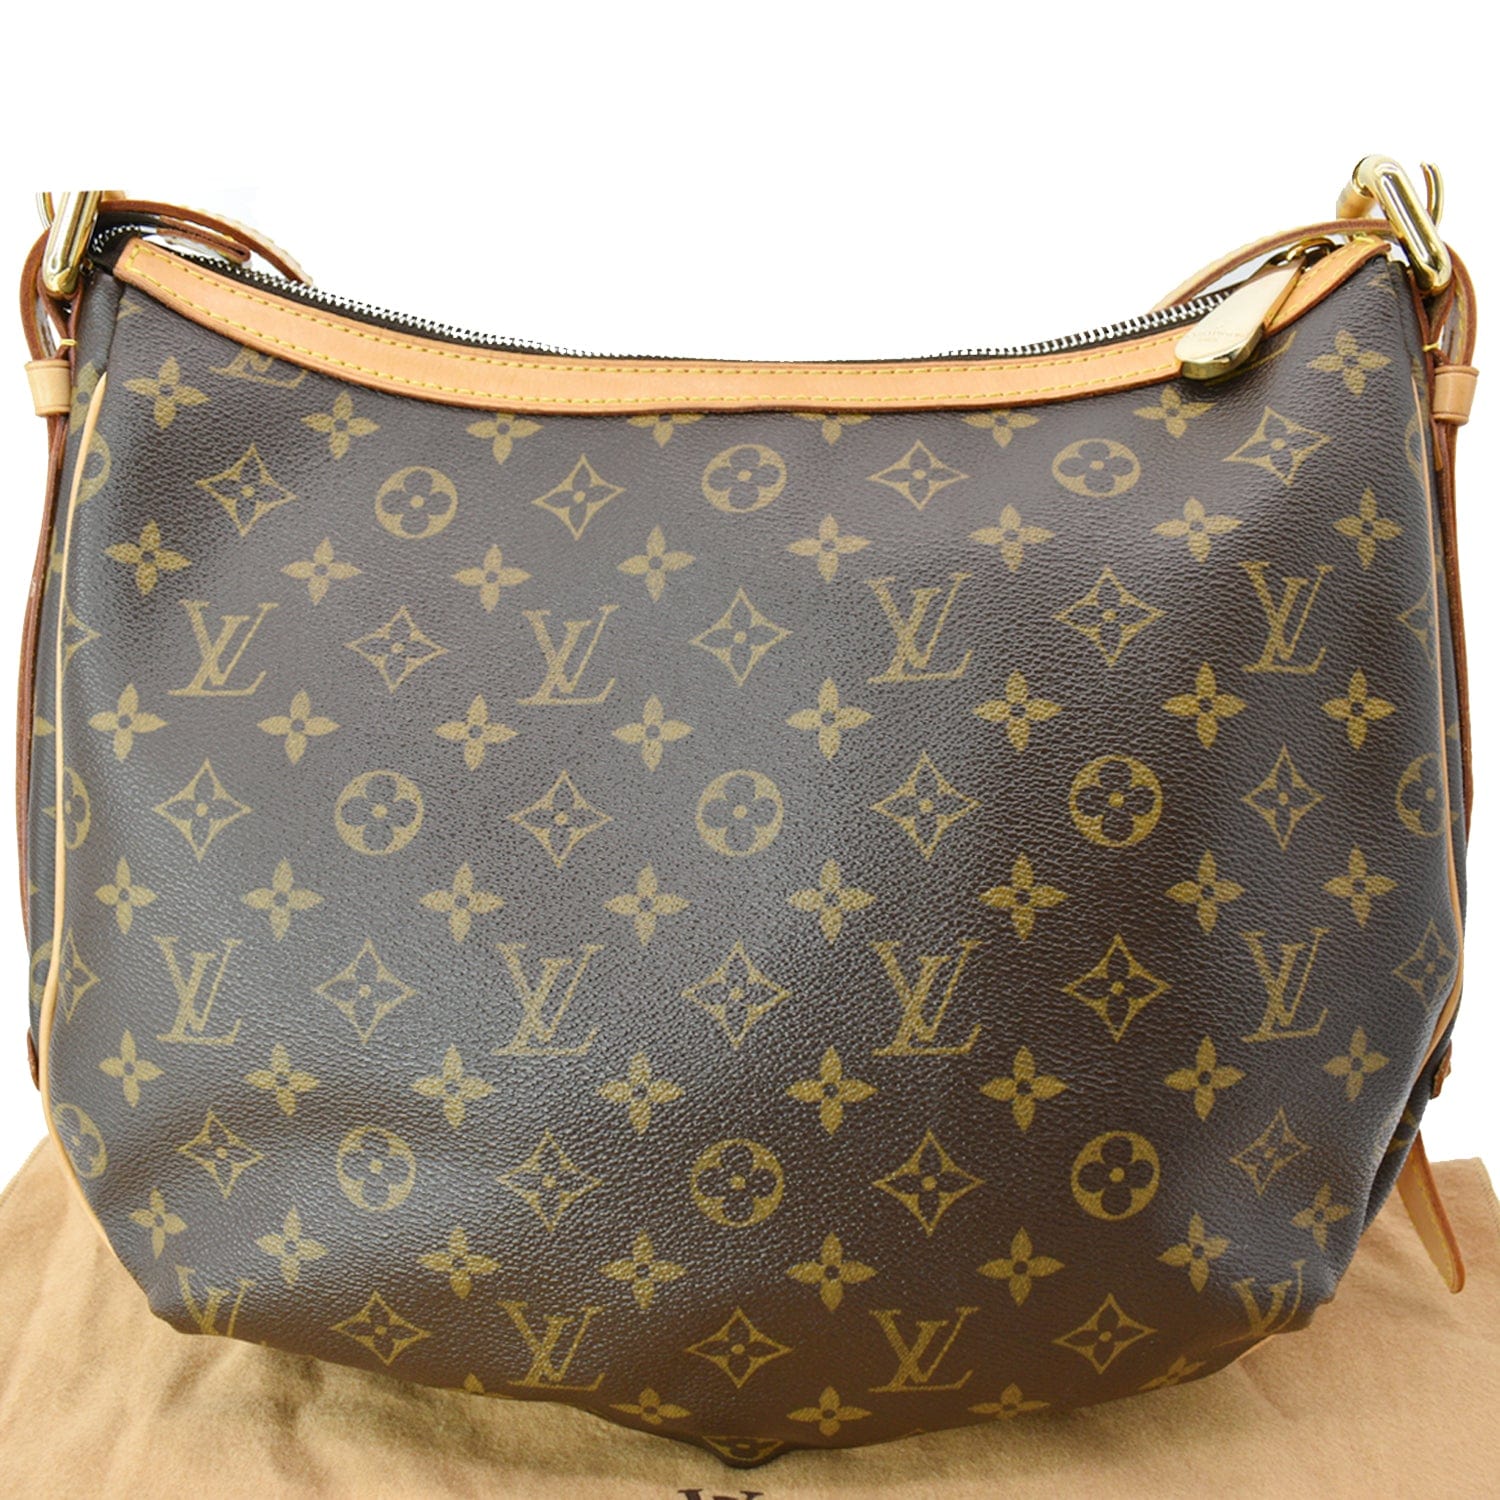 Non-authentic Louis Vuitton LV Handbag (A-6) #28795